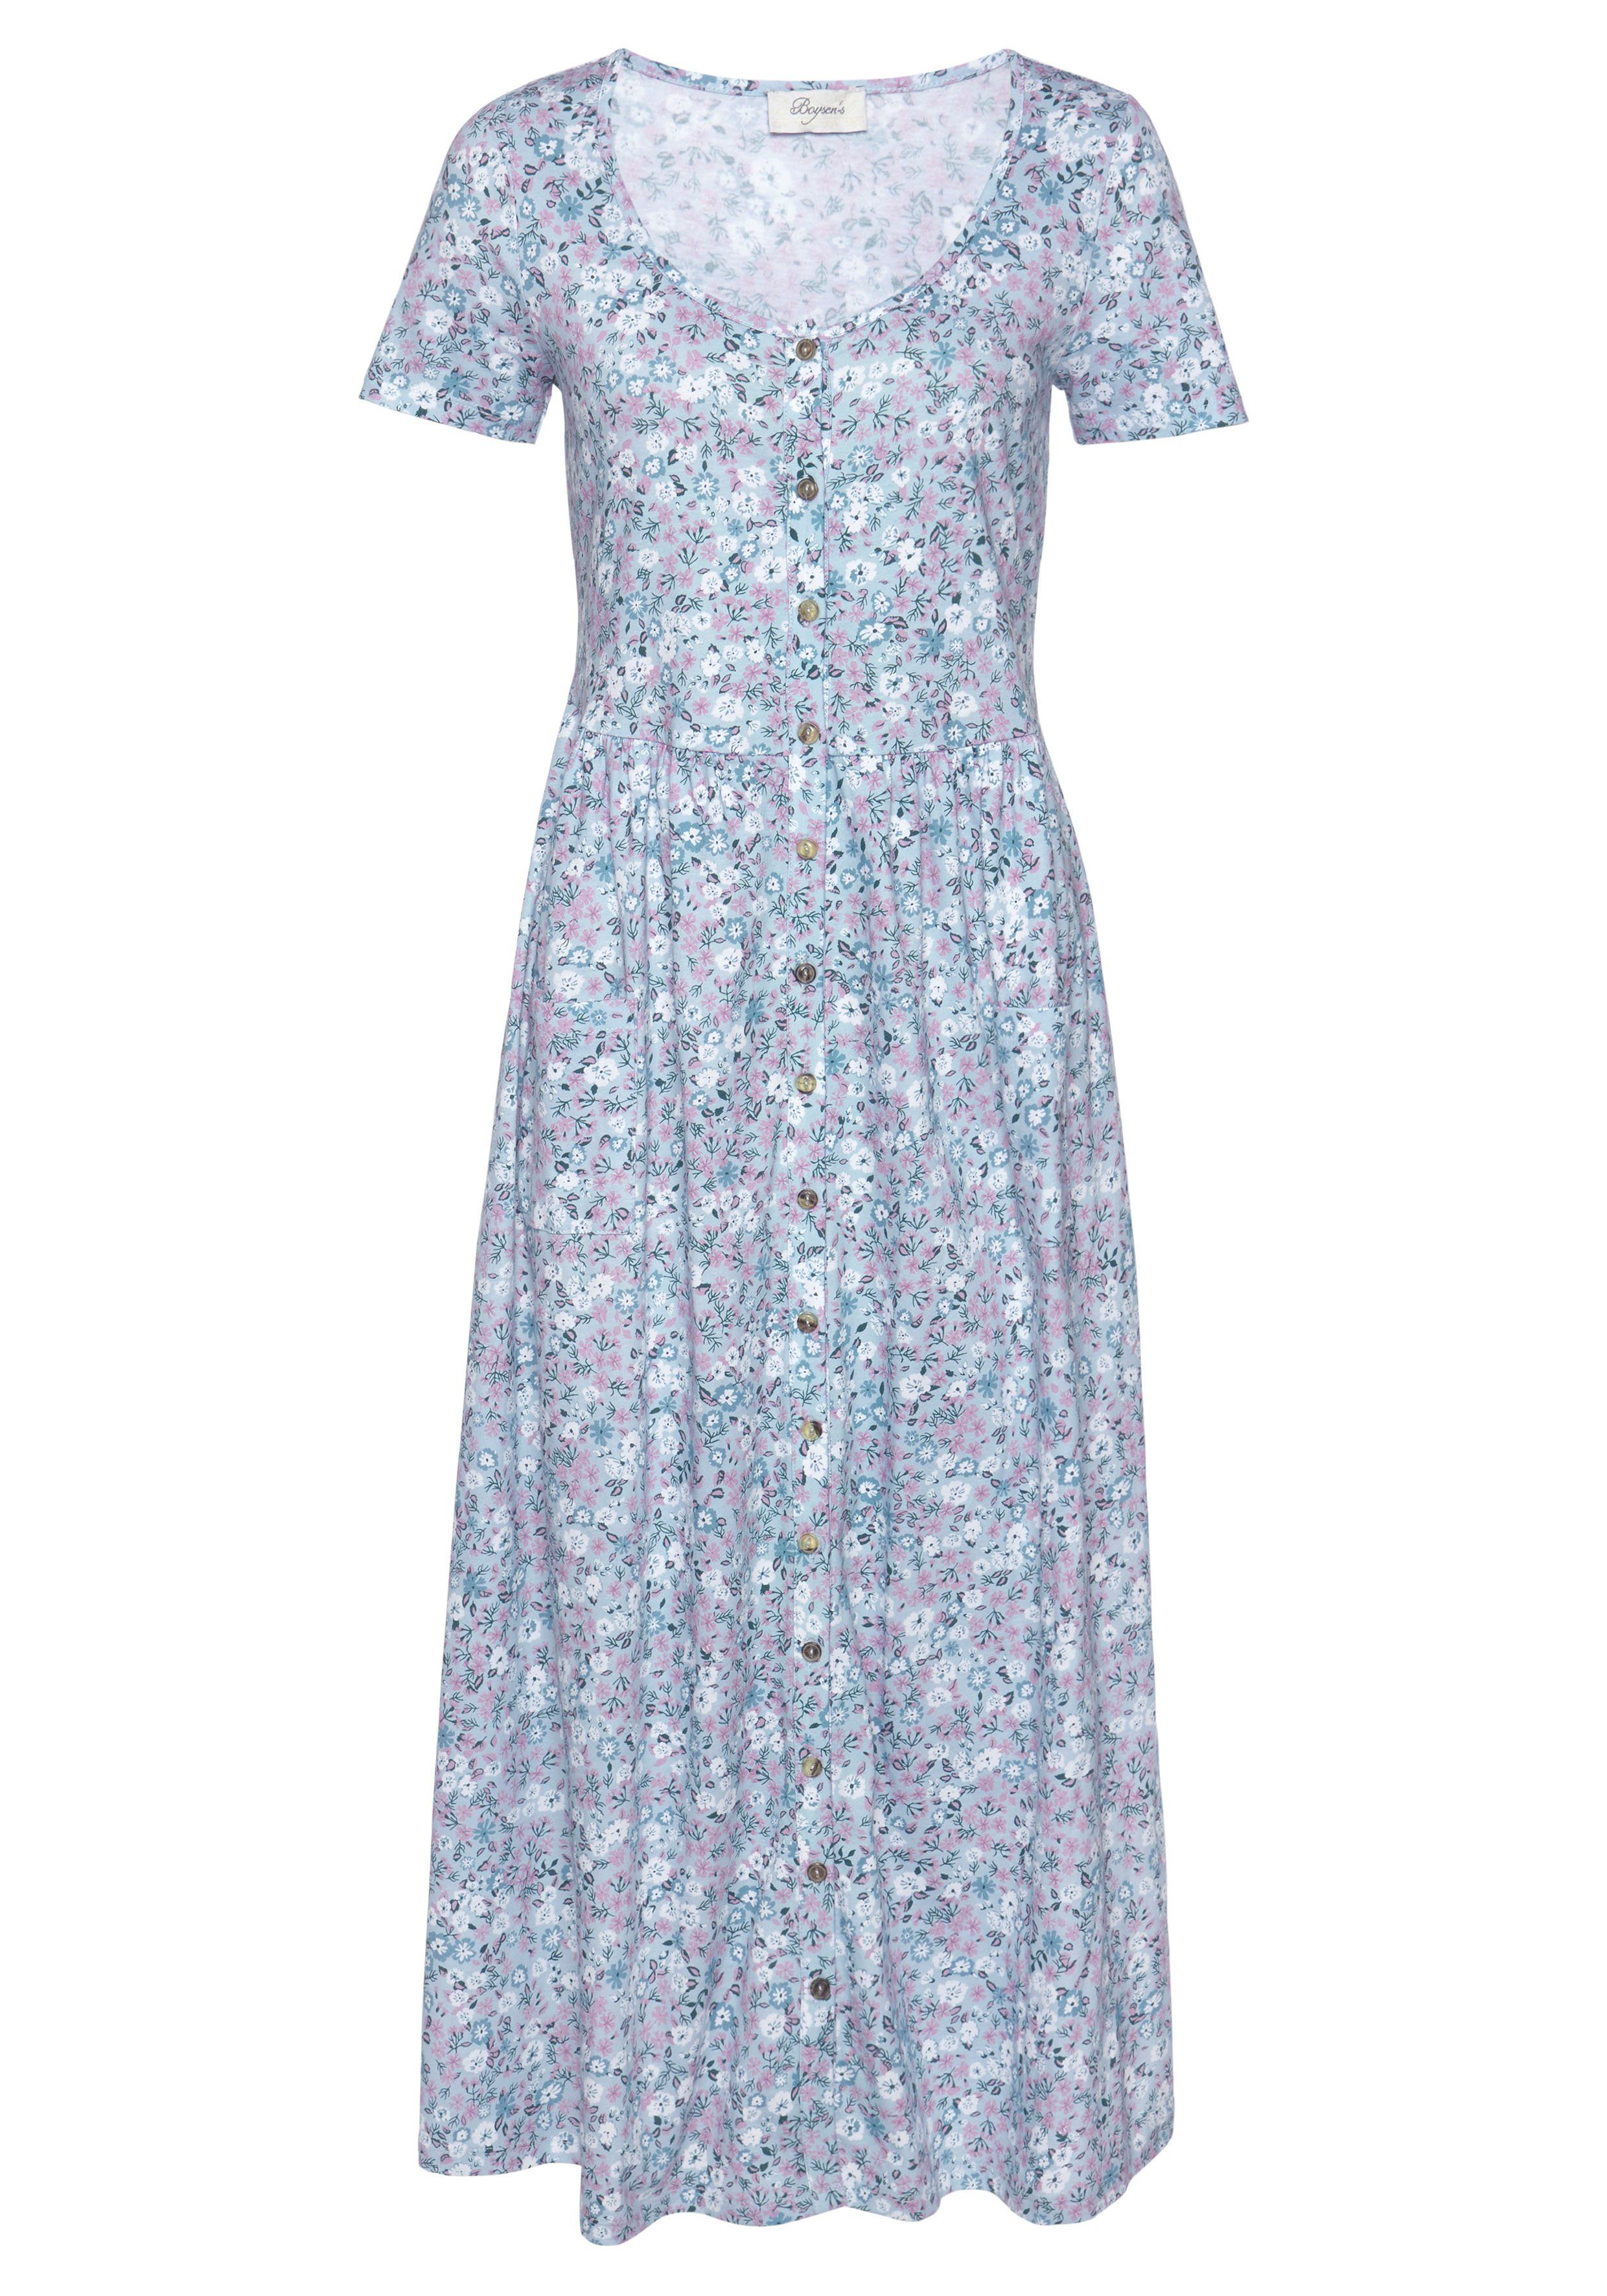 Boysen's Sommerkleid aus reiner Baumwolle kaufen | OTTO